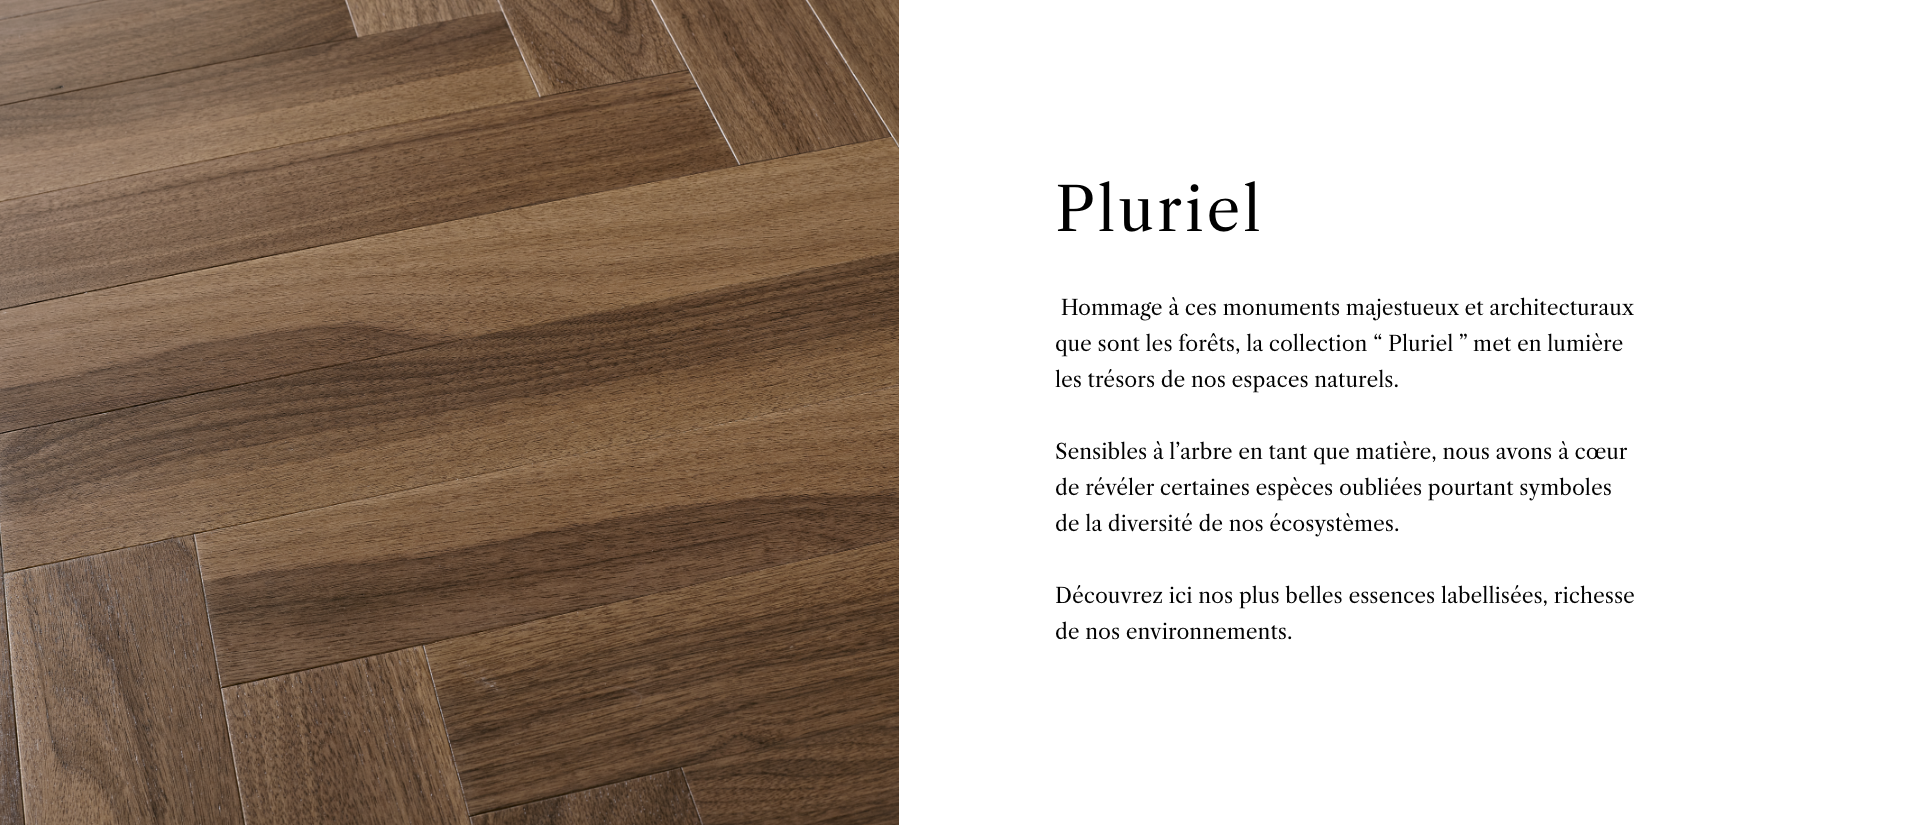 Collection Pluriel - Description